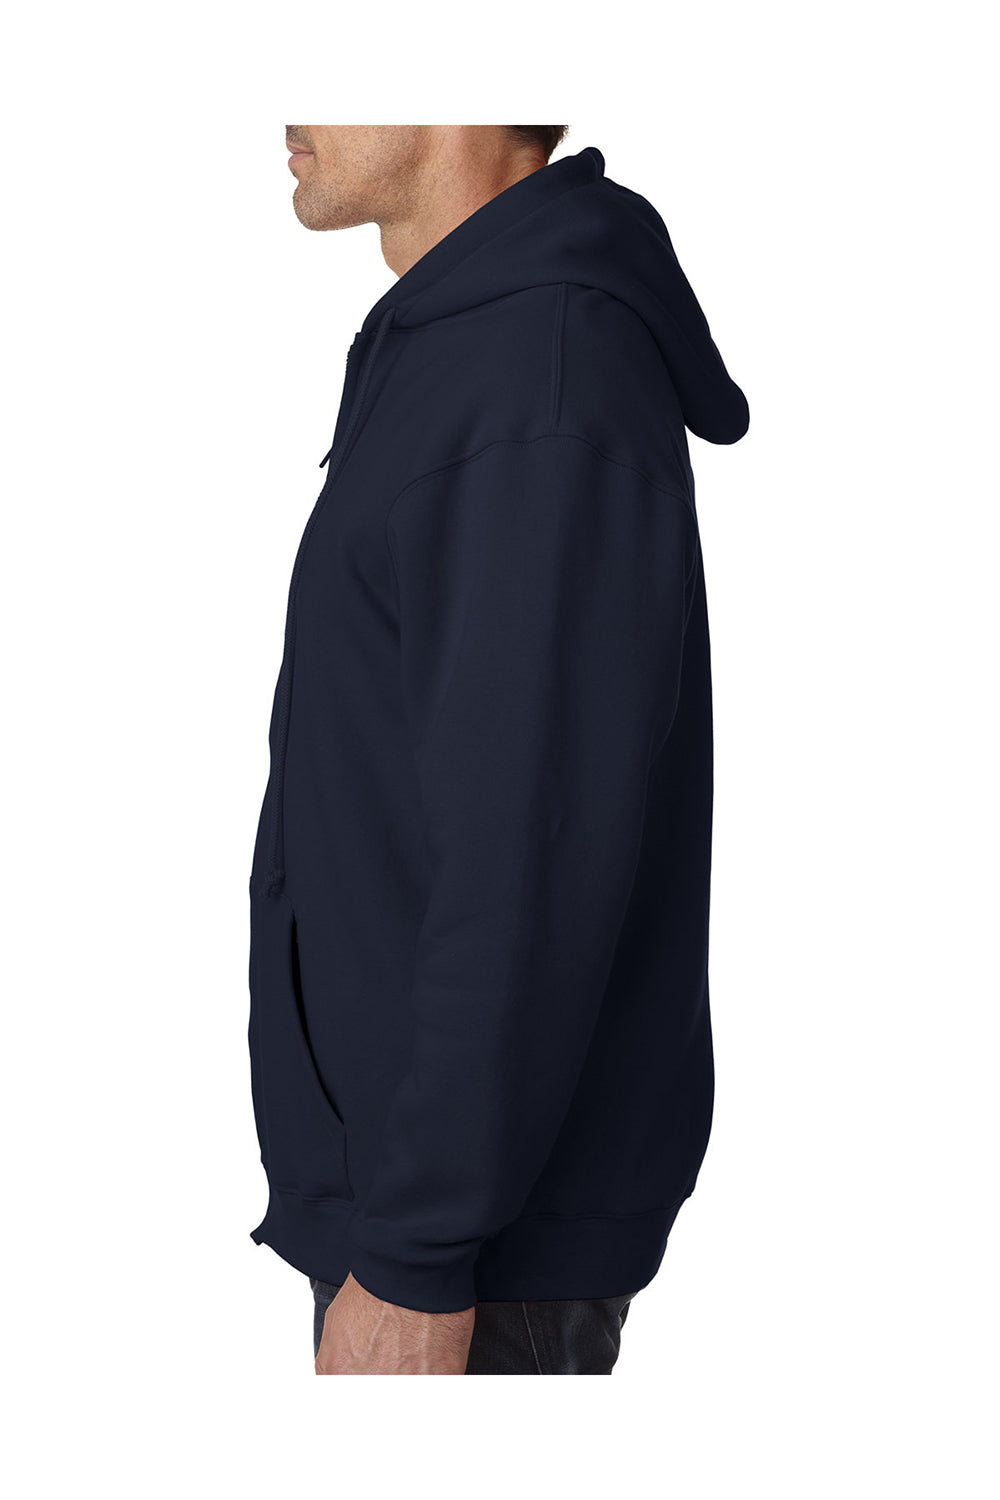 Bayside BA940 Mens Thermal Lined Full Zip Hooded Sweatshirt Hoodie Black/Cream Model Side